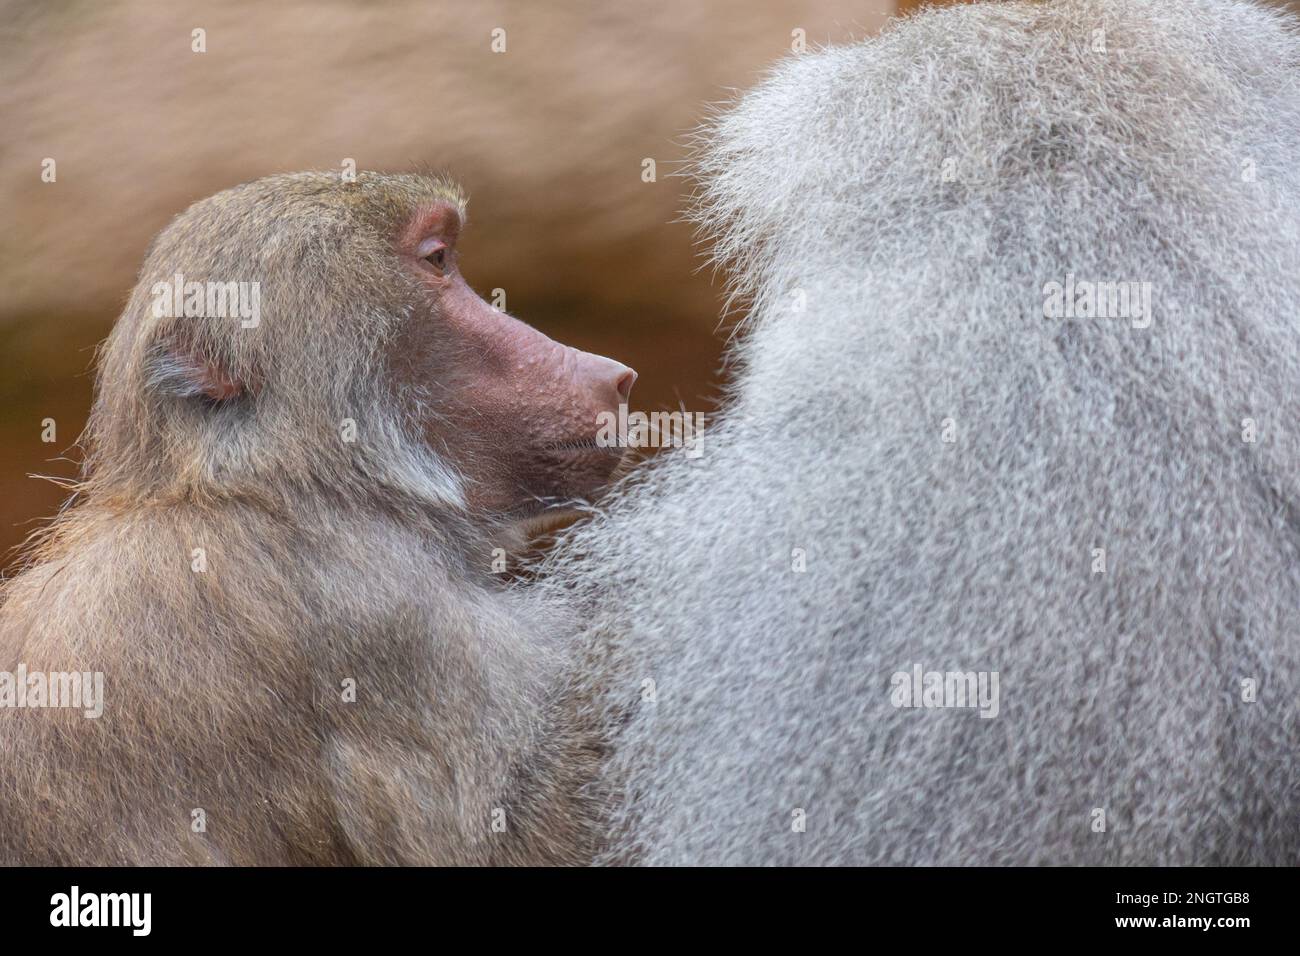 Un babouin femelle (papio) assis près d'un babouin mâle Banque D'Images